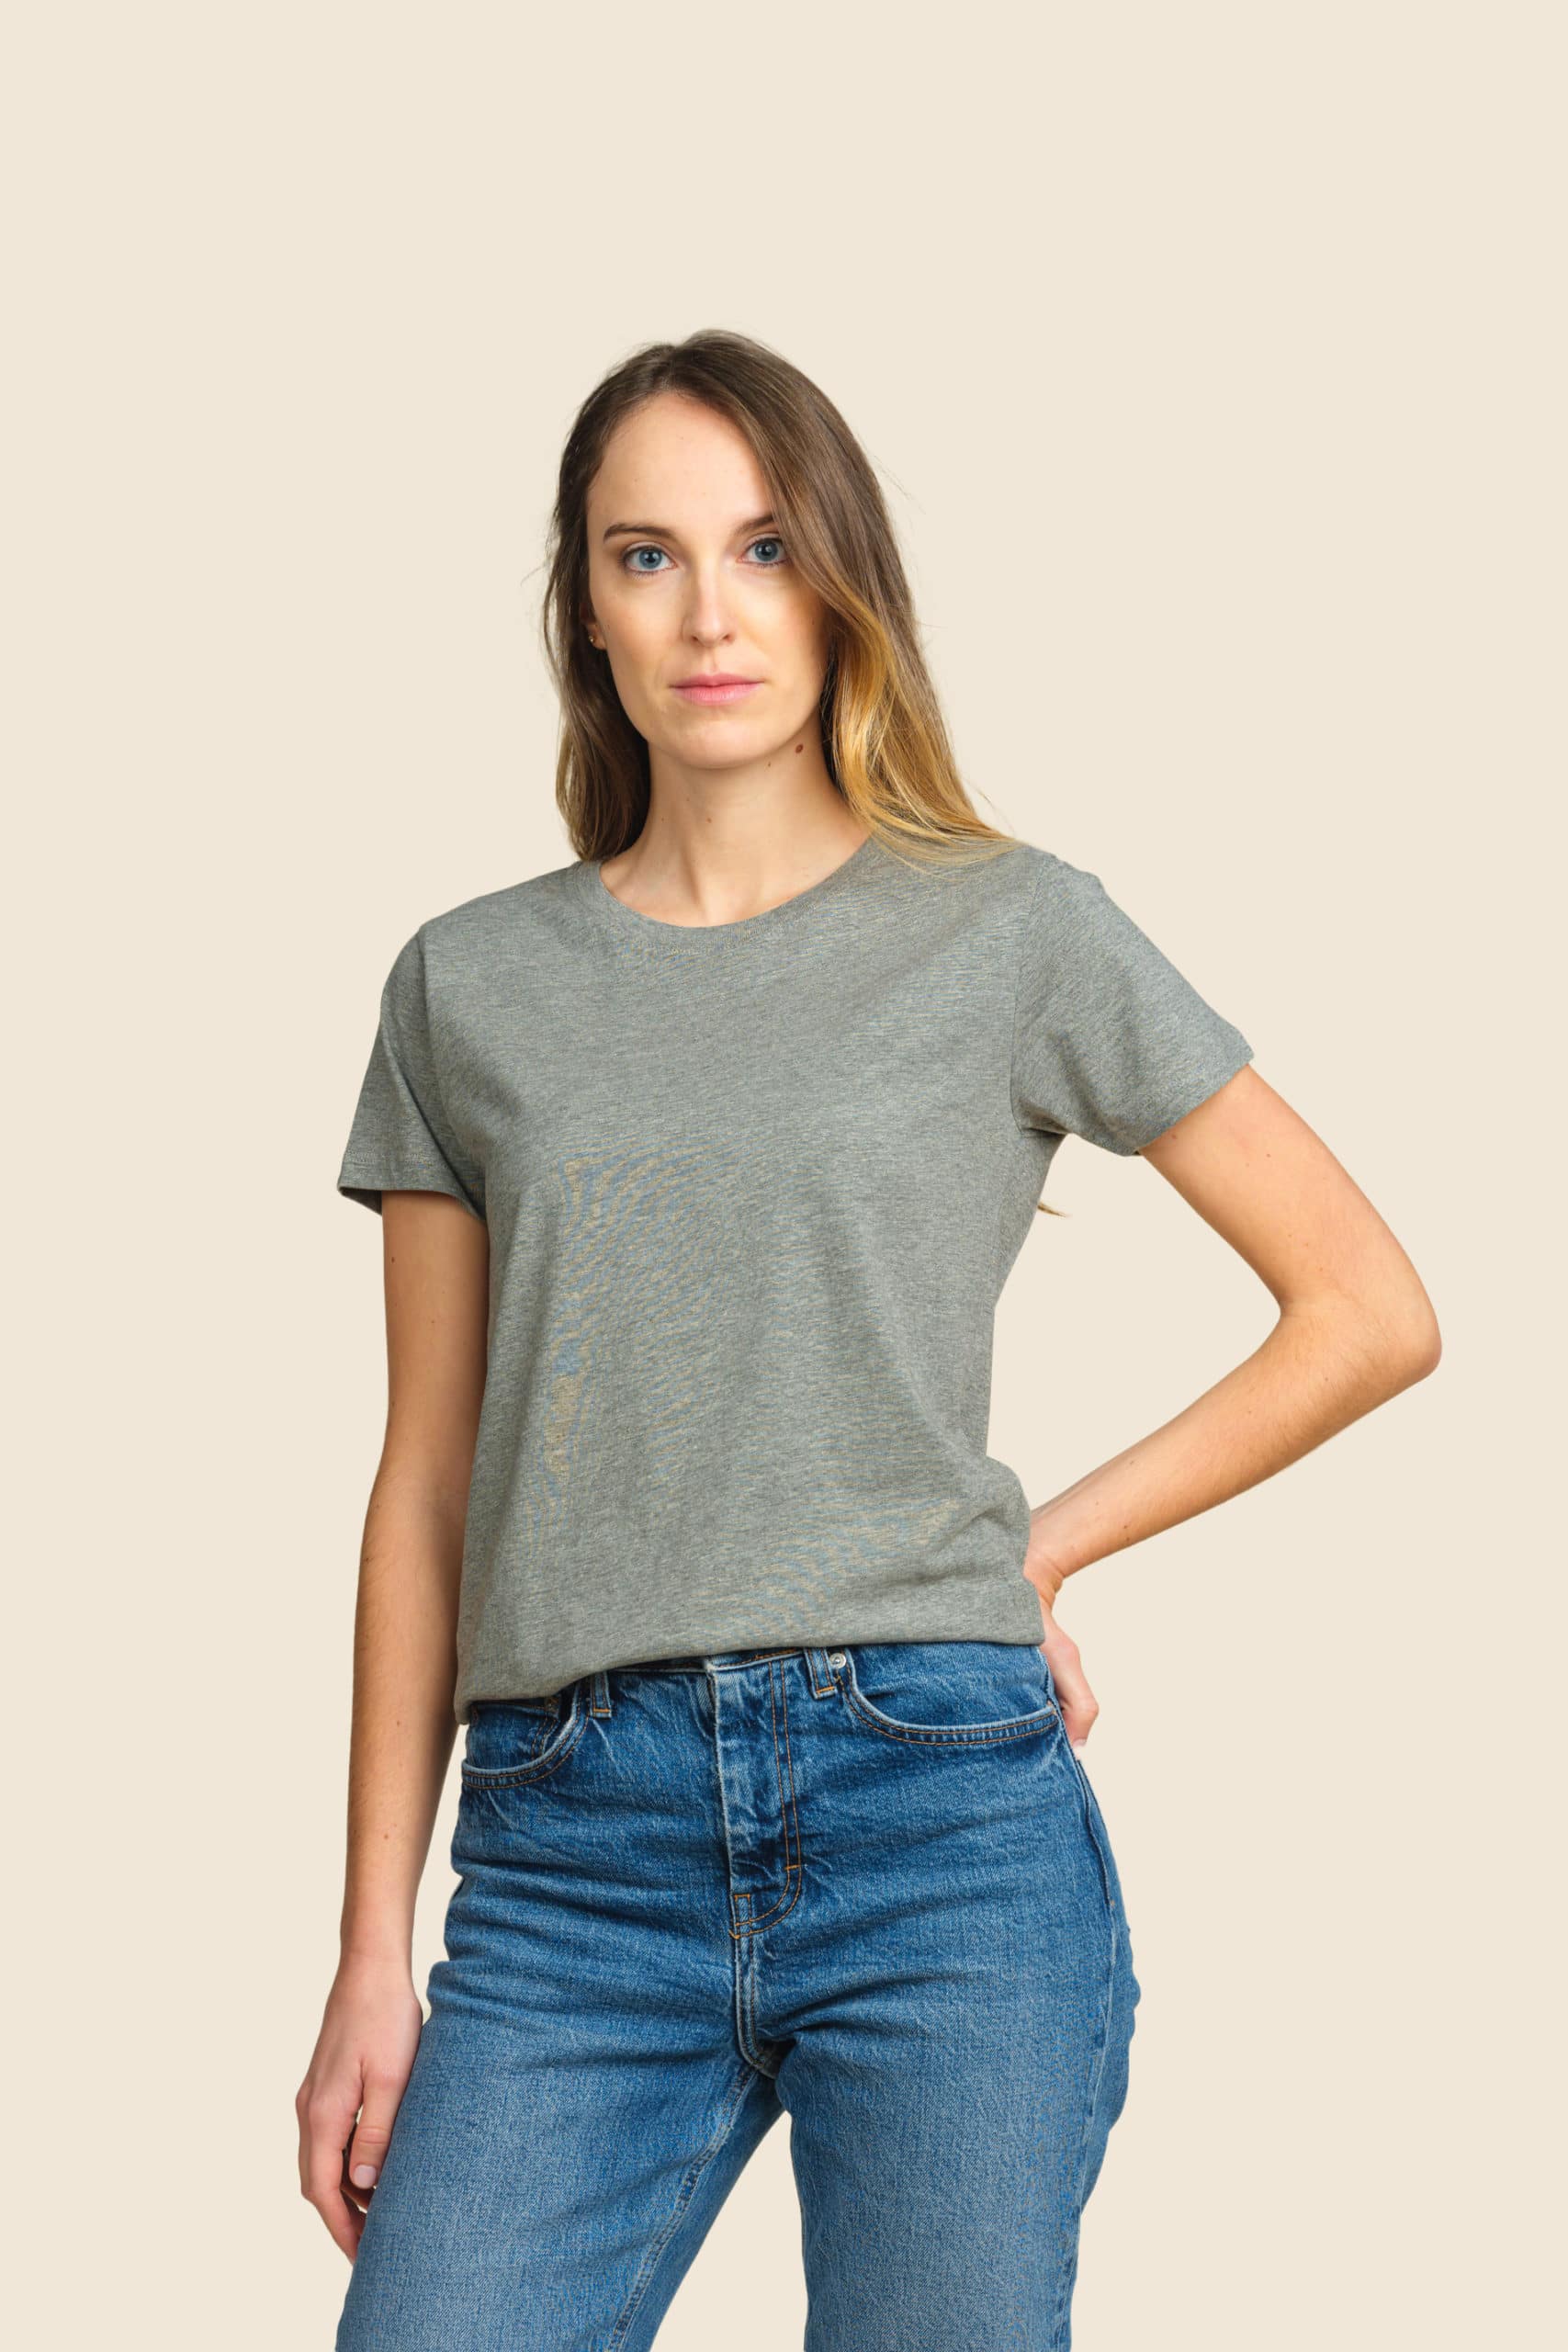 t-shirt léger gris femme personnalisable - Icone Design